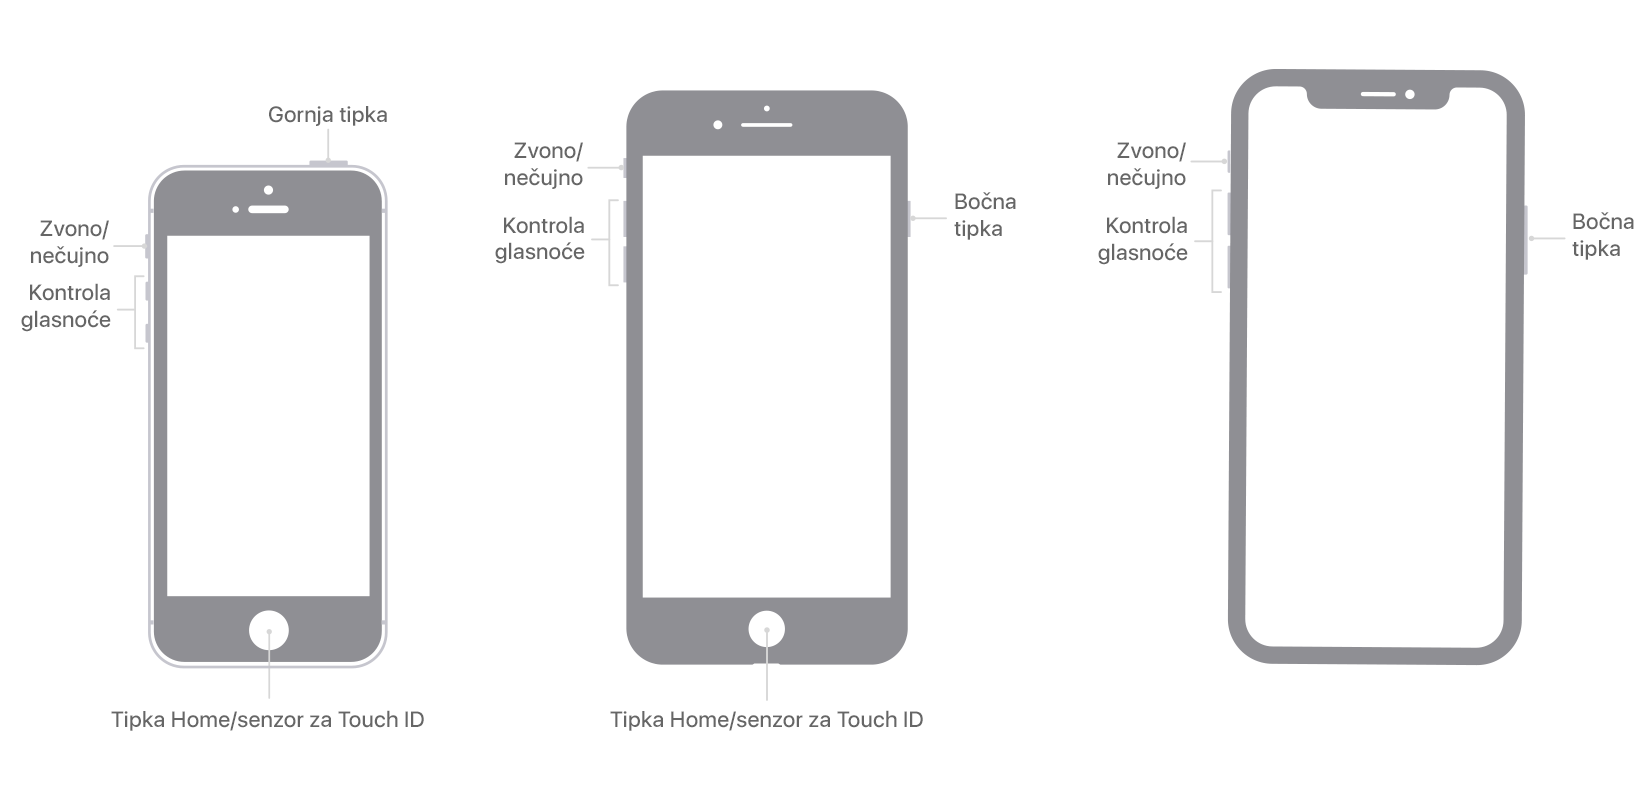 Slike modela iPhone uređaja na kojima su prikazane tipke